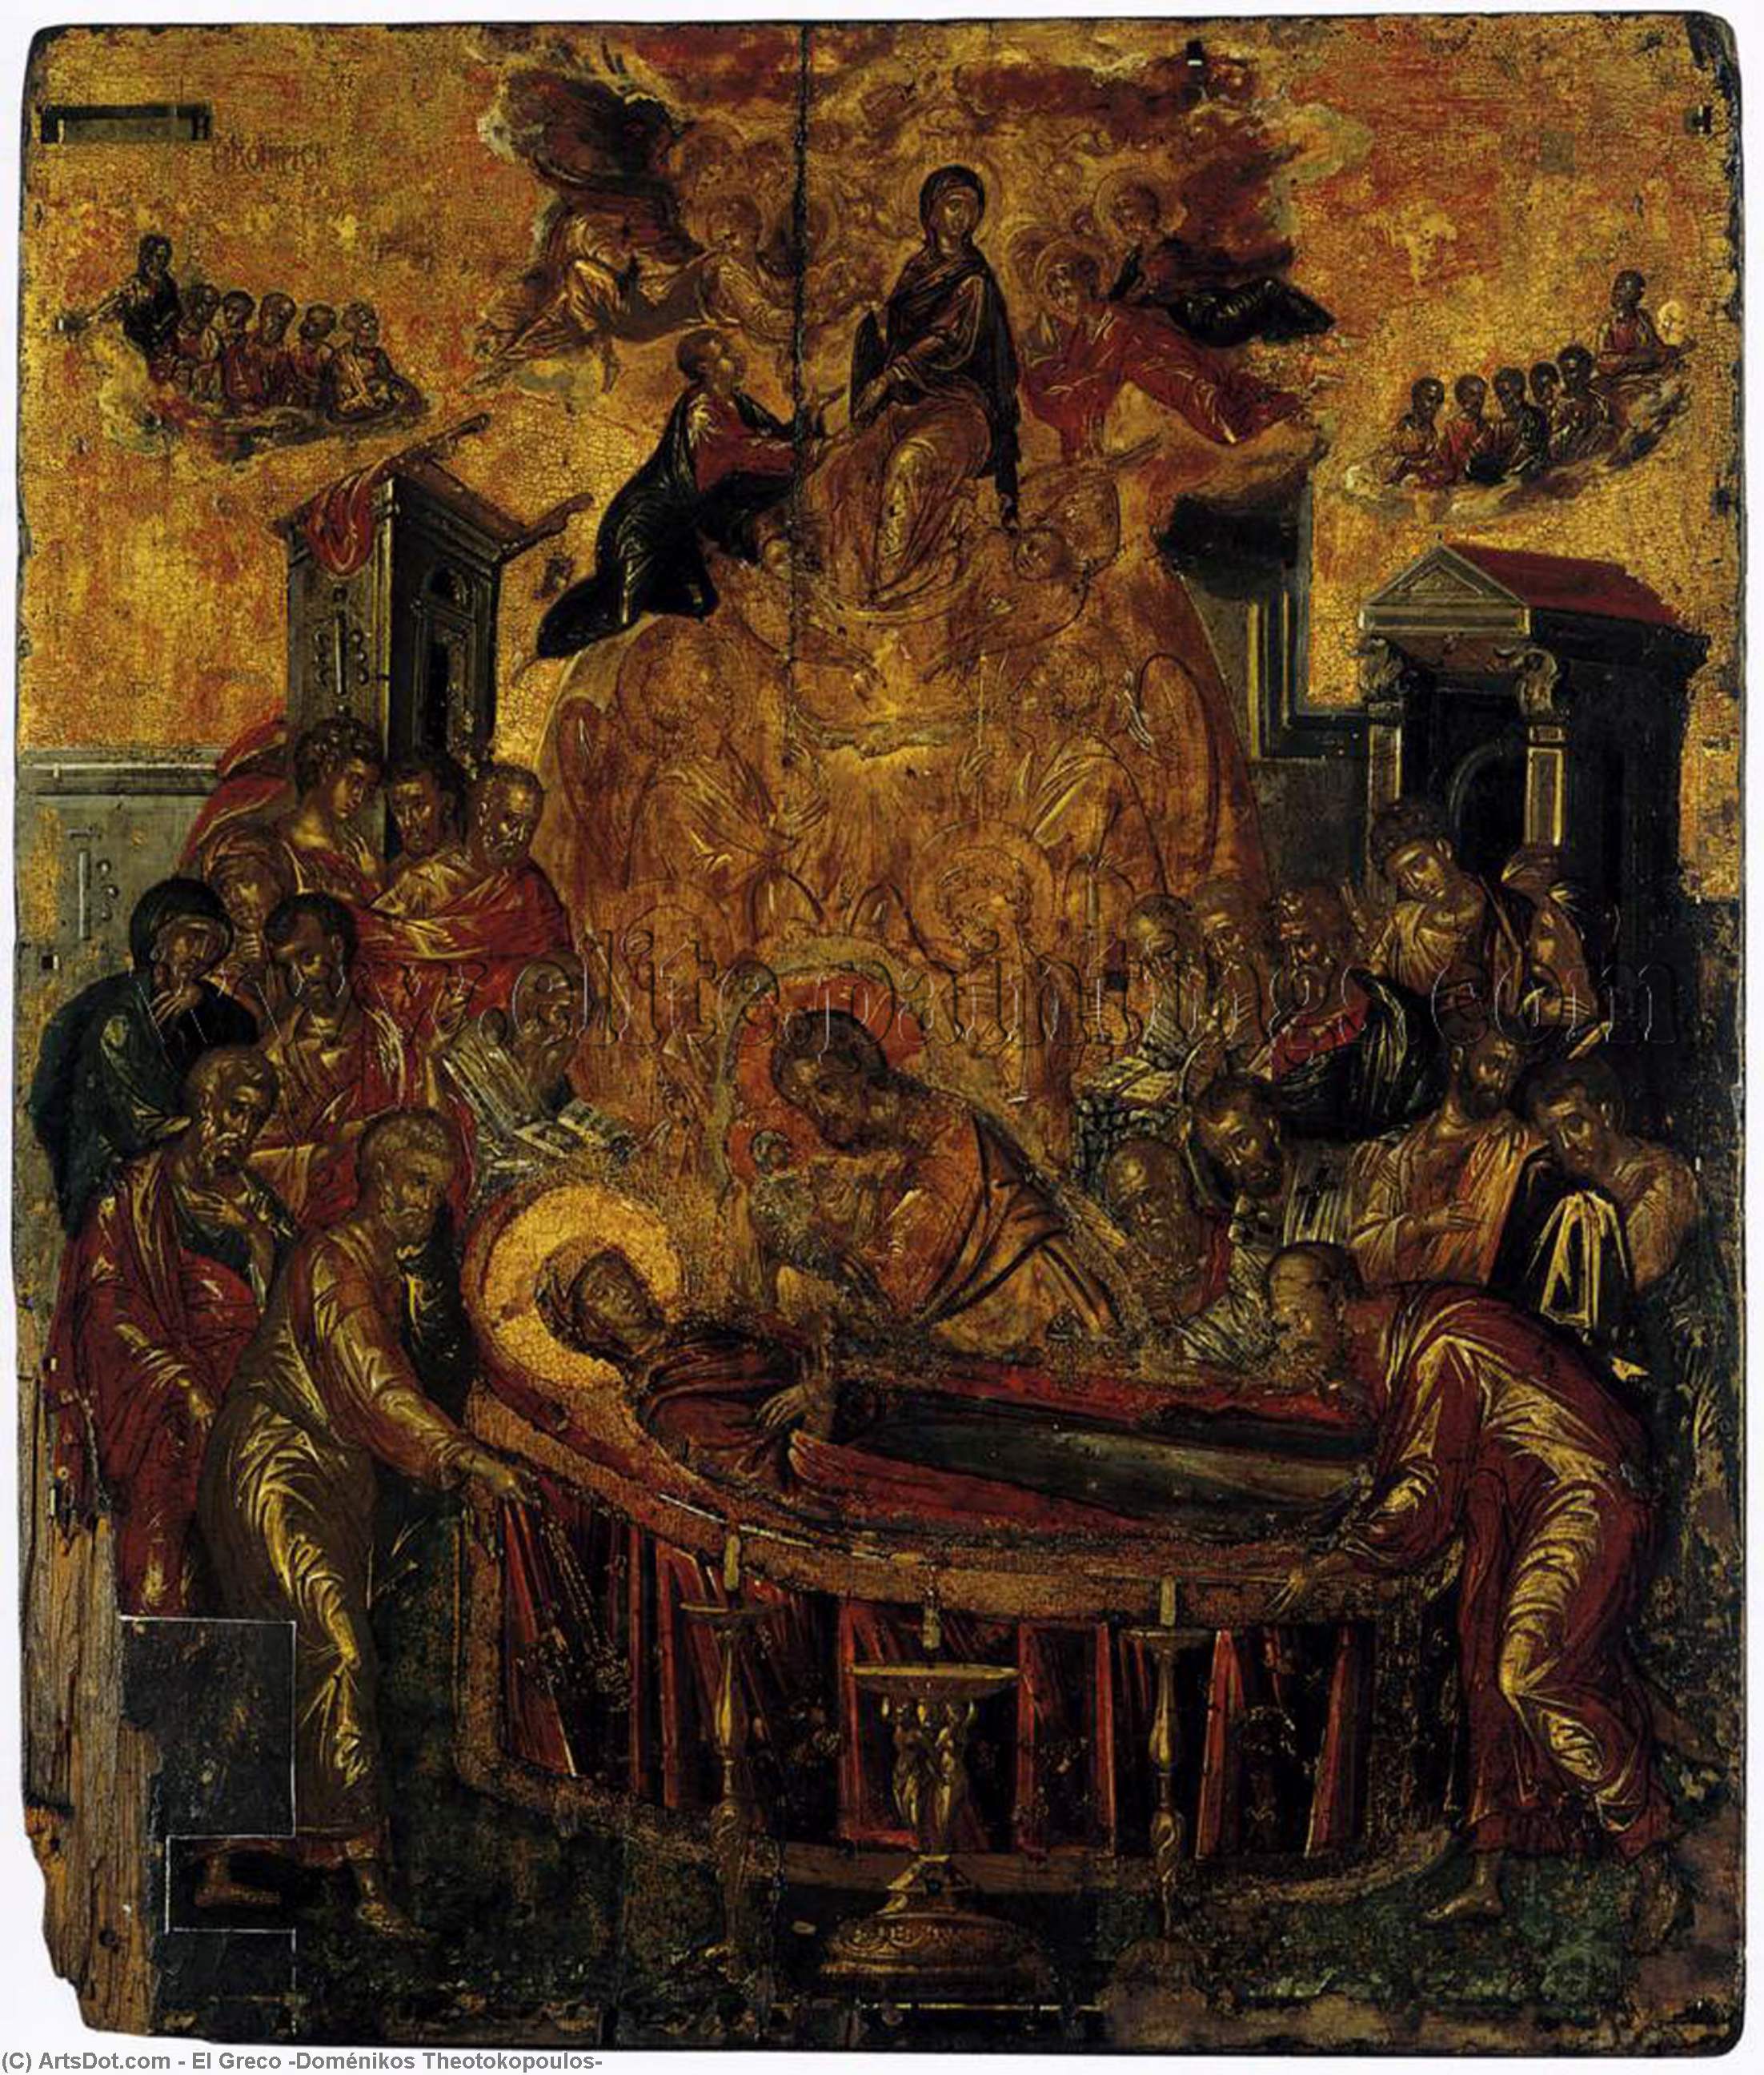 WikiOO.org - Encyclopedia of Fine Arts - Lukisan, Artwork El Greco (Doménikos Theotokopoulos) - The Dormition of the Virgin